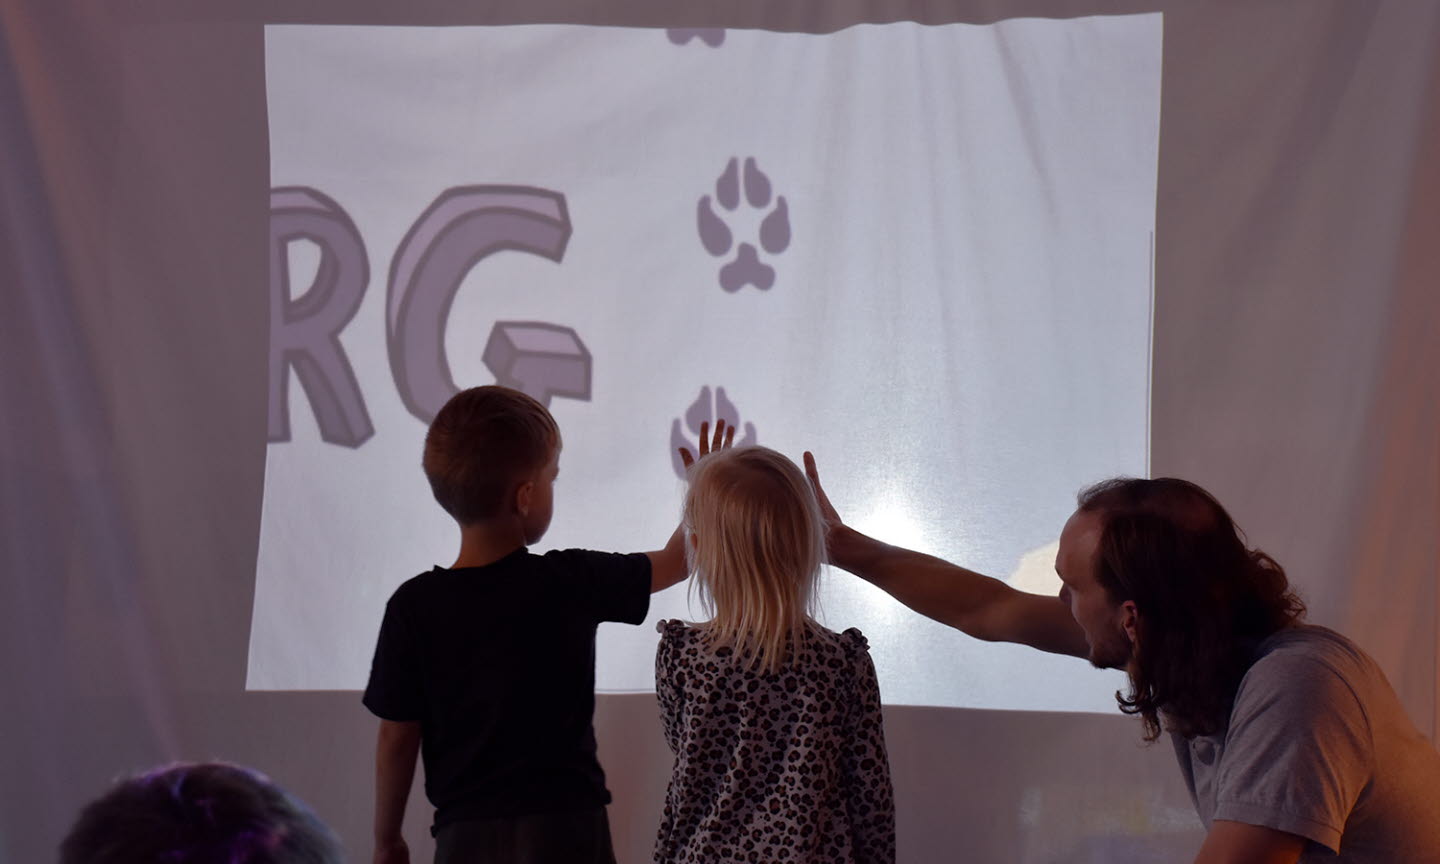 Förskolebarn jämför sina händer med ett lodjurs på en skärm